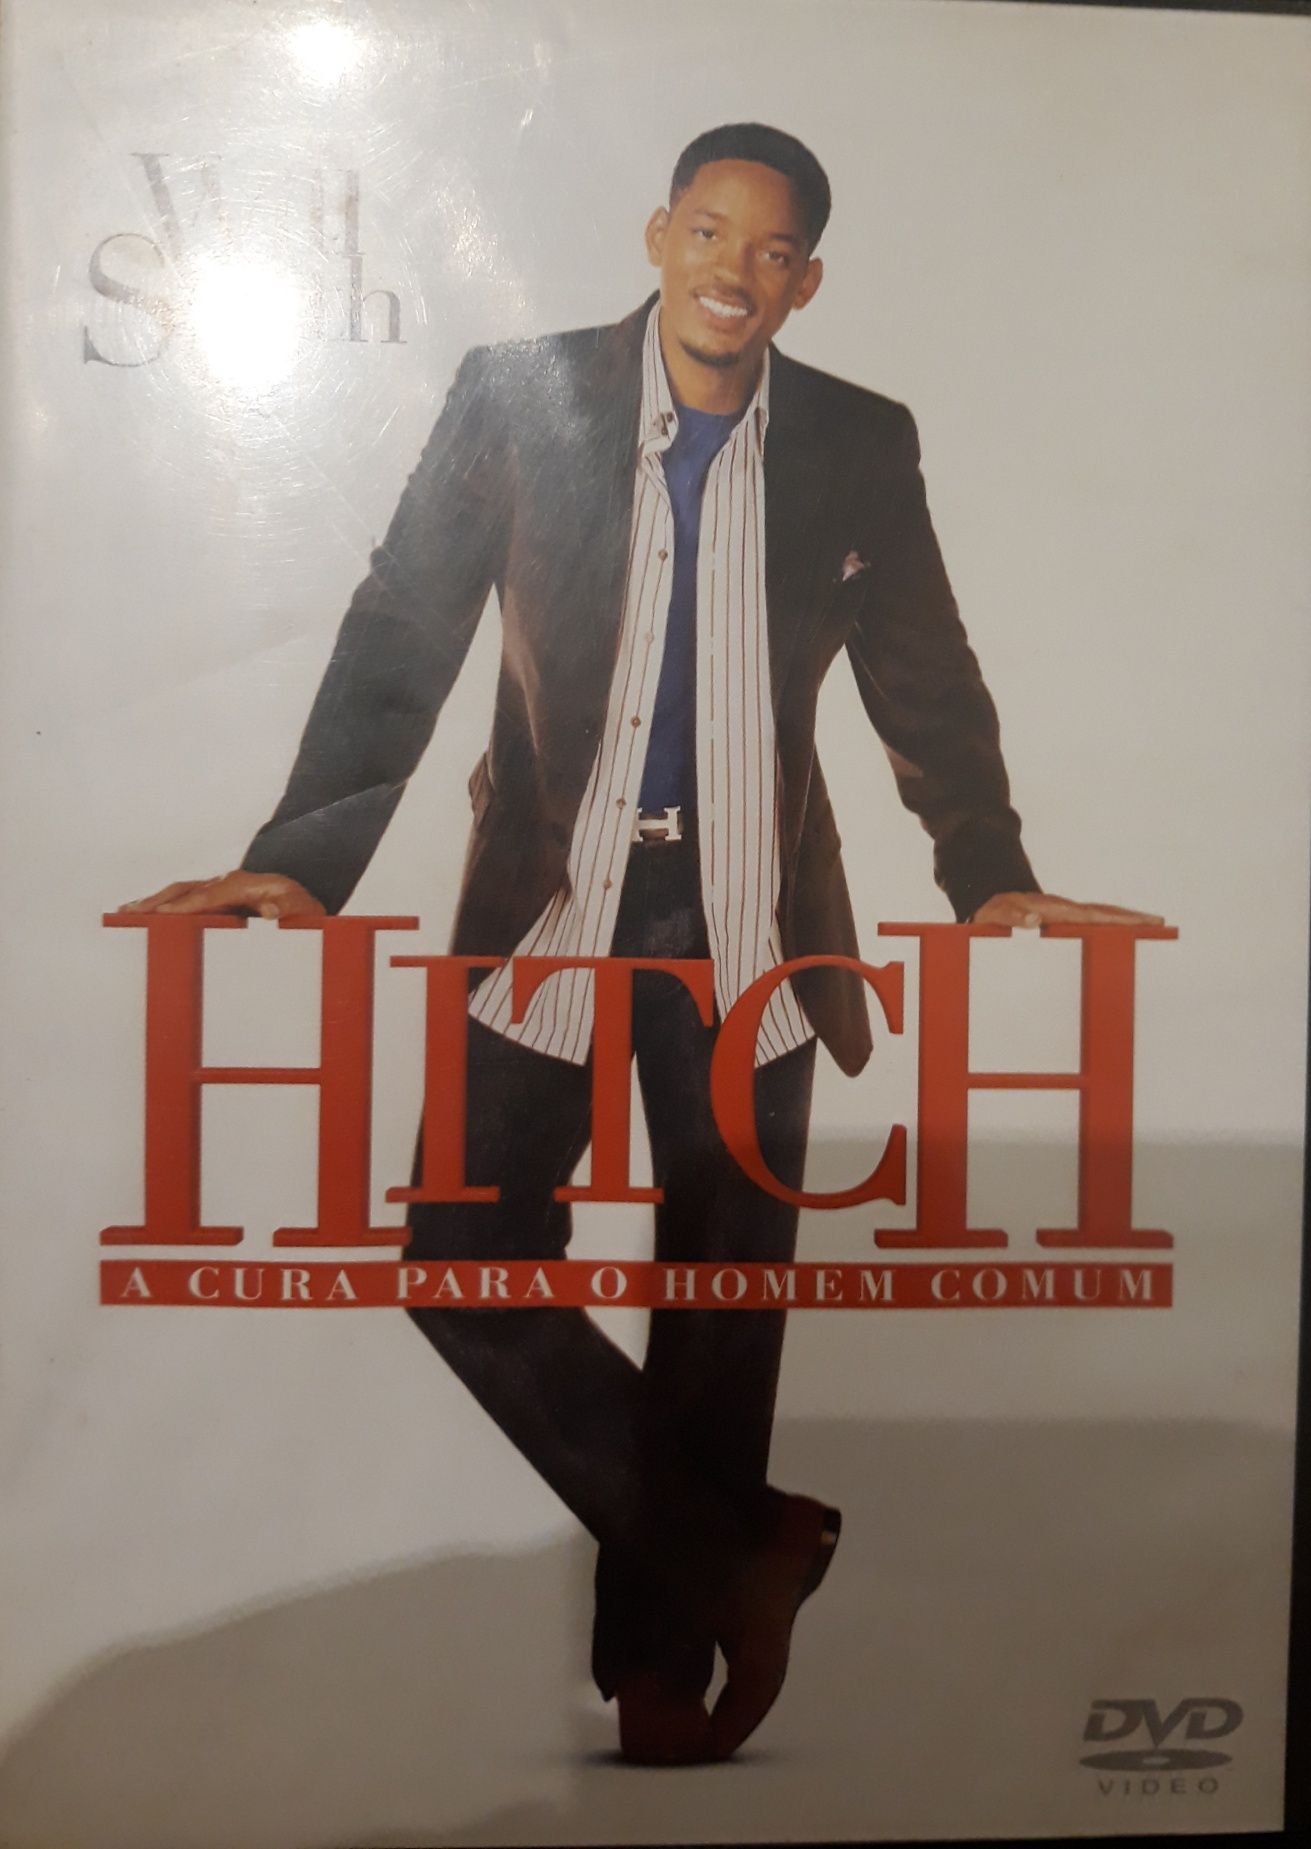 DVD Hitch A Cura para o Homem Comum